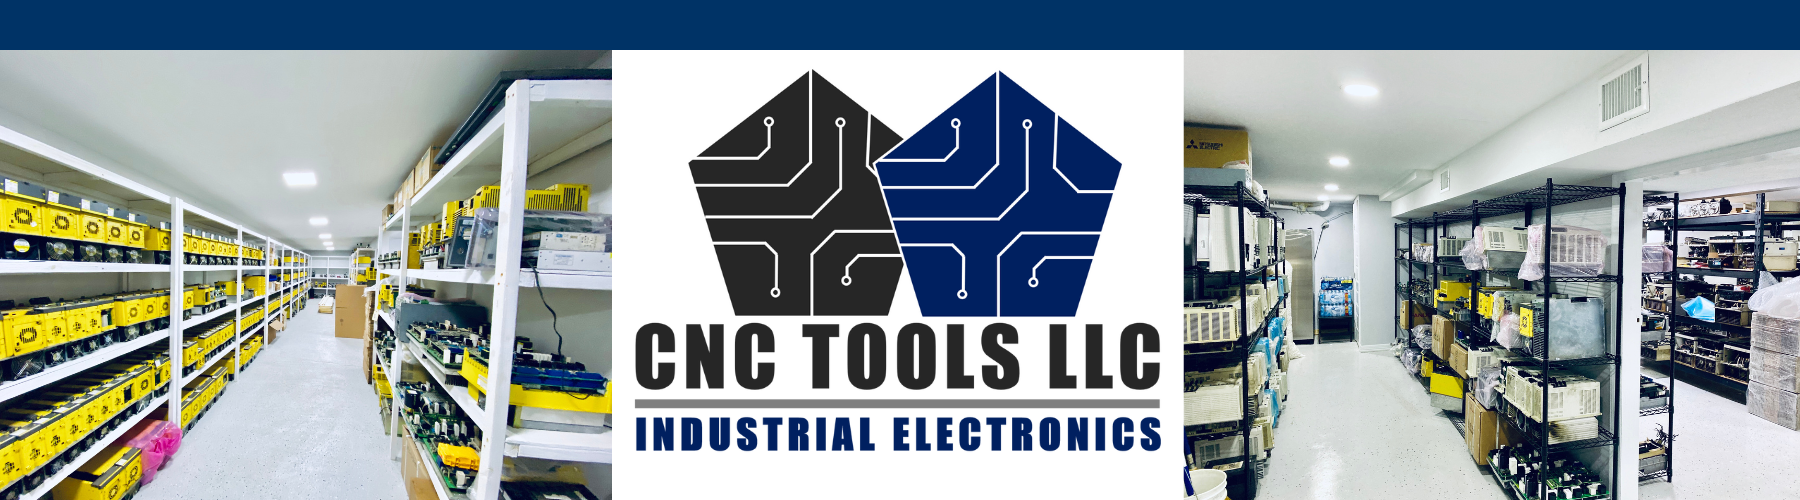 Why Choose CNC Tools LLC?